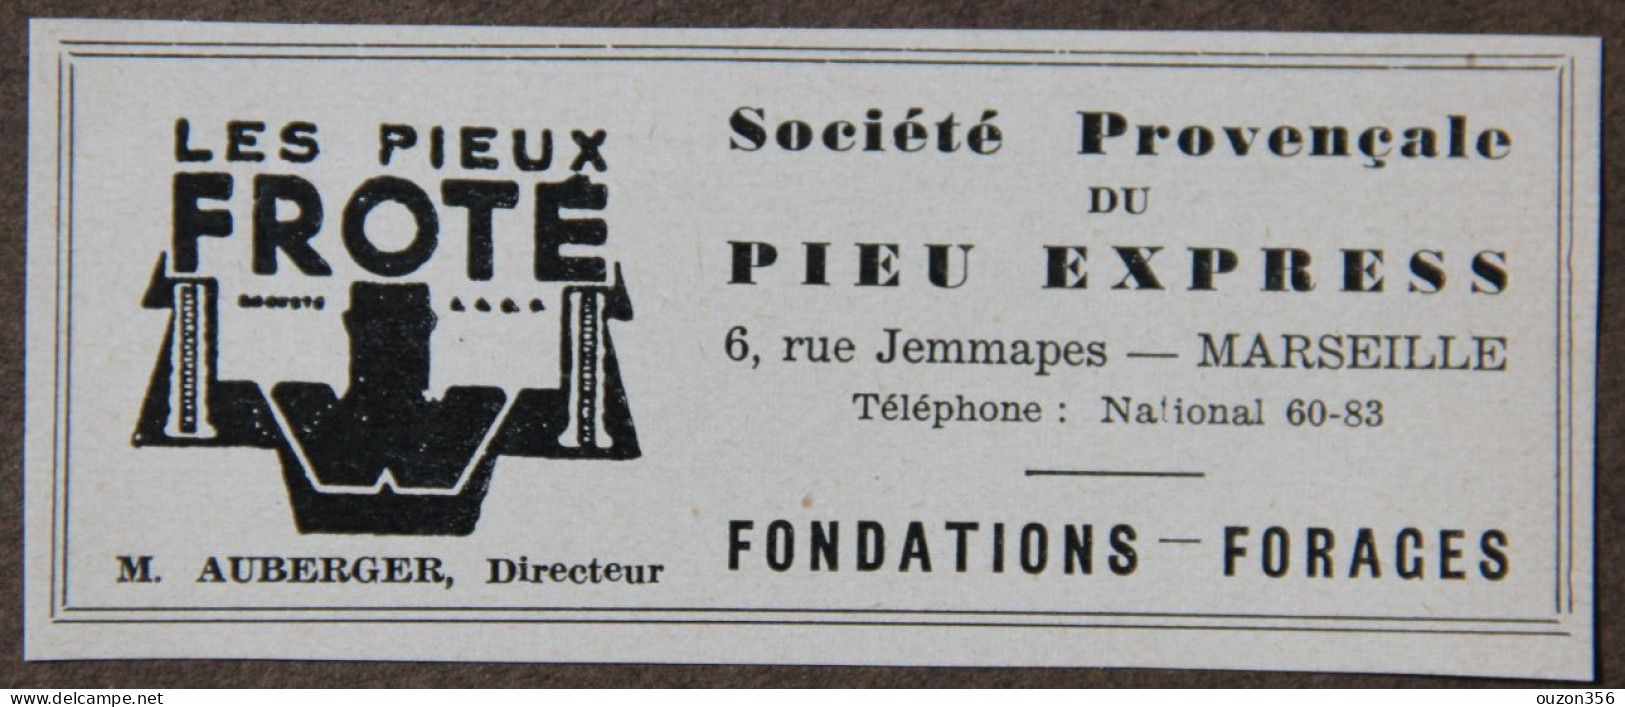 Publicité, Sté Provençale Du Pieu Express, Les Pieux Froté, Fondations, Forages, Marseille, 1951 - Pubblicitari